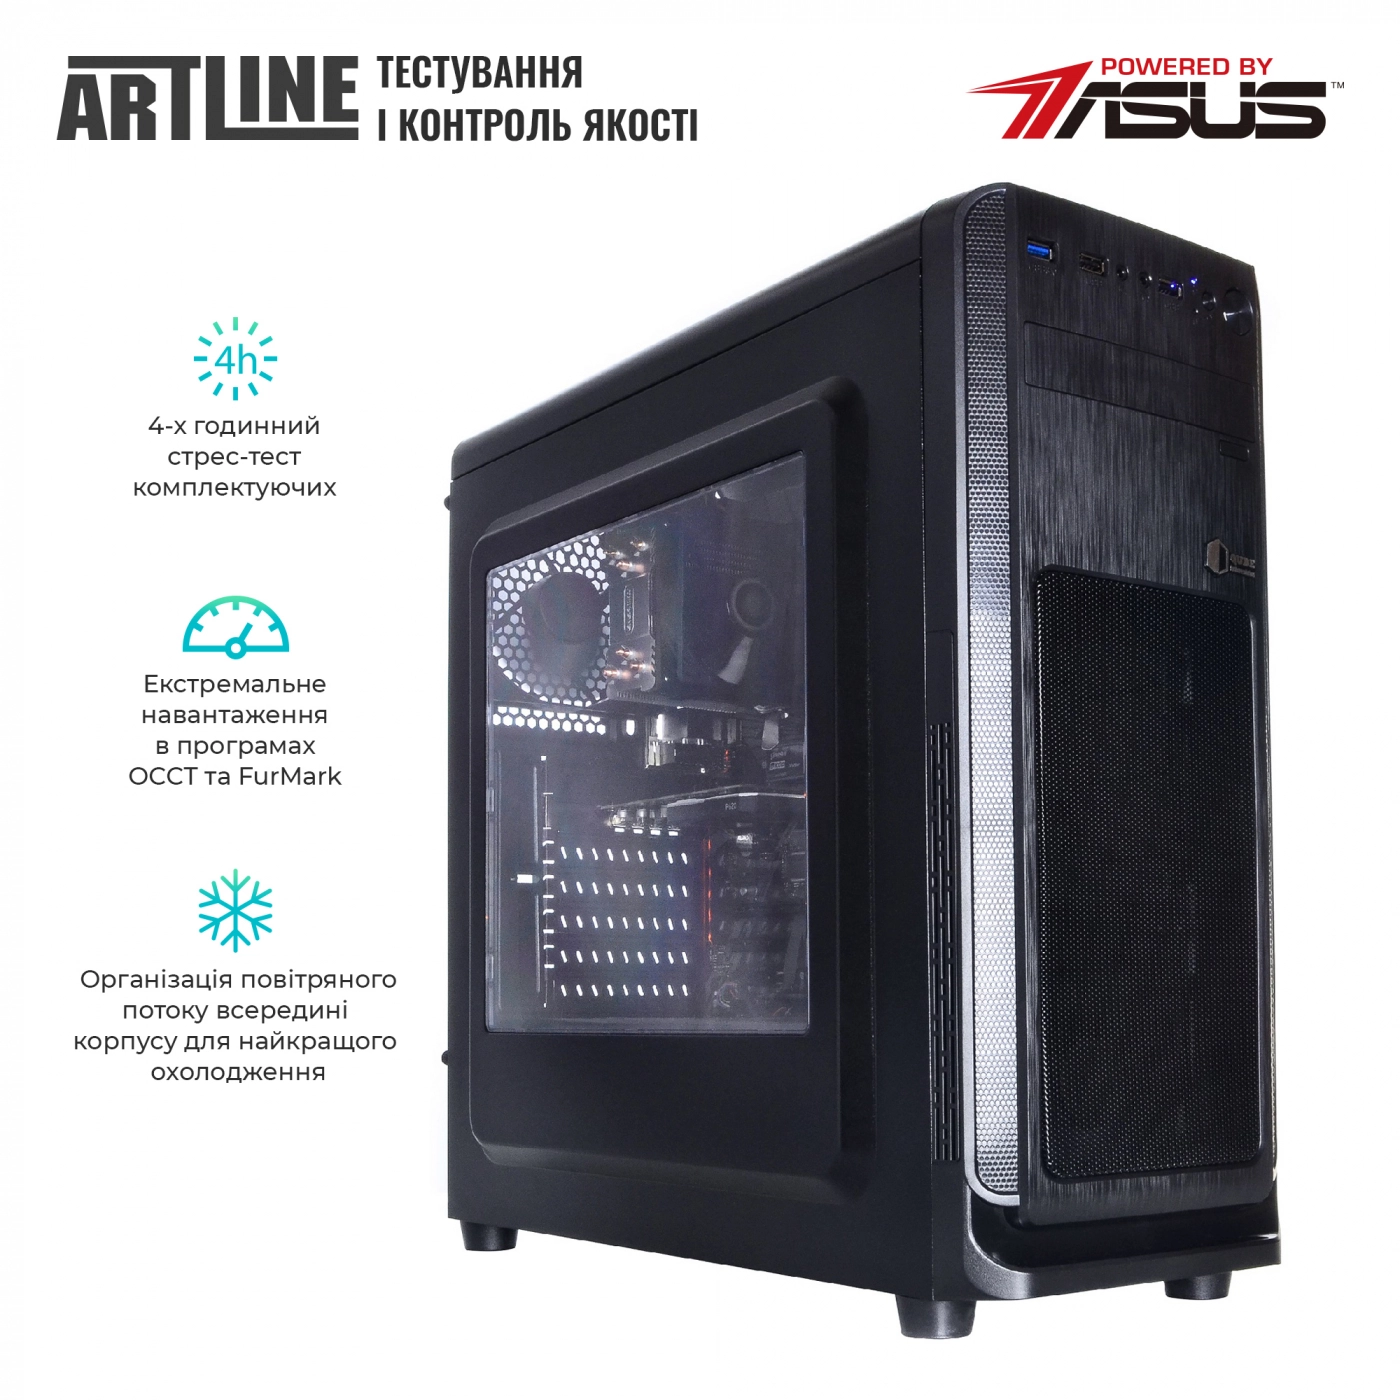 Купить Сервер ARTLINE Business T25v32 - фото 11